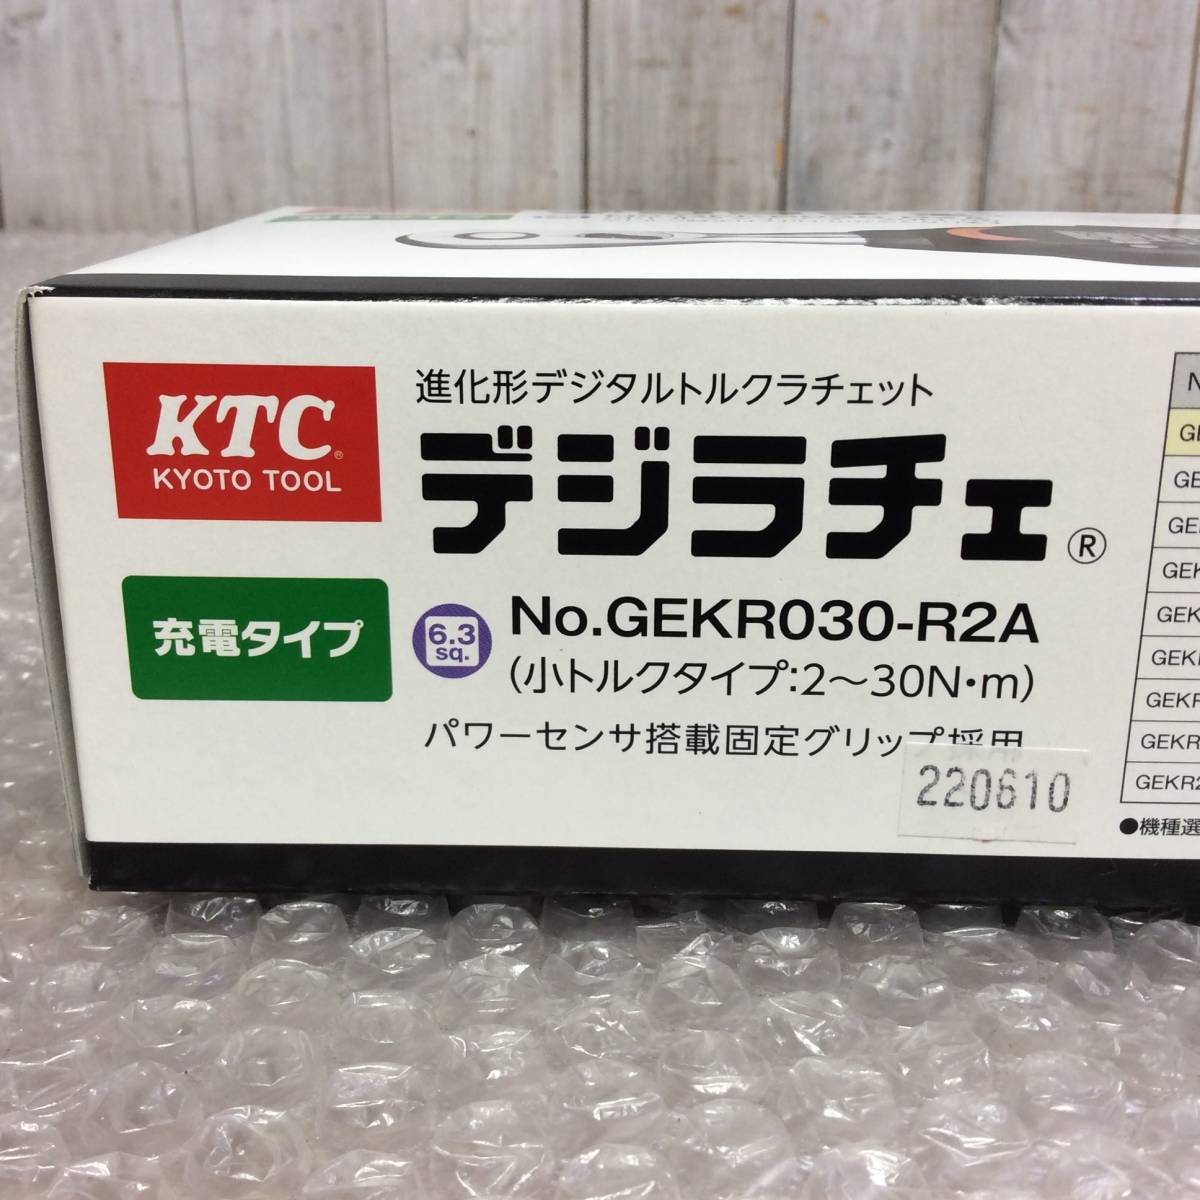 KTC 6.3sq. デジラチェ 充電式小トルクタイプ GEKR030-R2A-